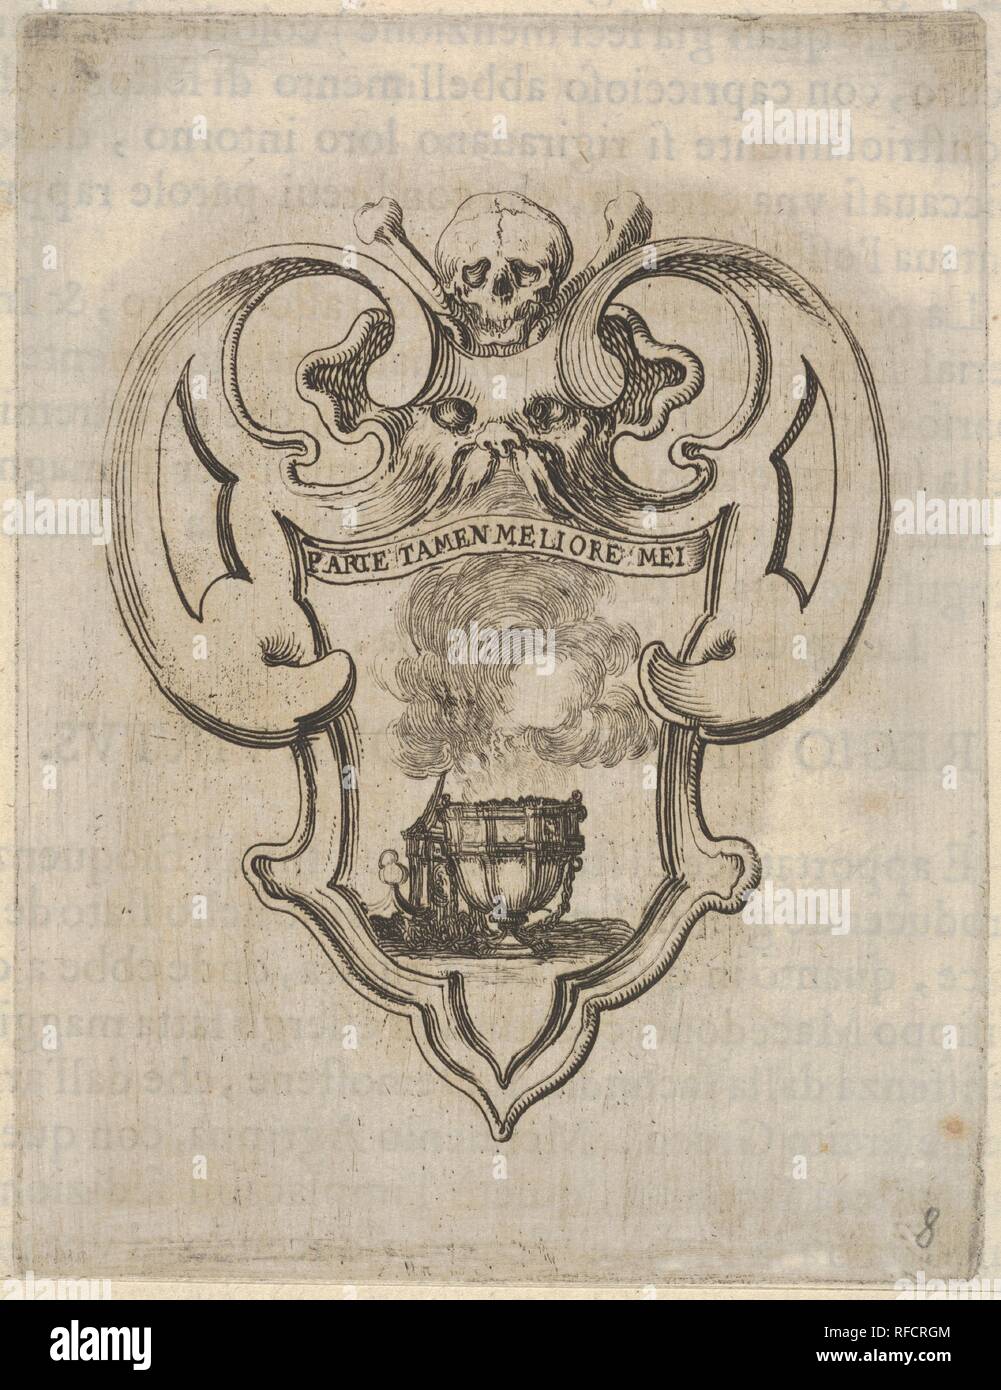 Un cartouche avec un encensoir, une tête de mort et un visage grotesque en haut, à partir de 'Huit emblèmes pour les funérailles de Francesco de' Medici (Huit emblèmes pour les funérailles du prince François de Médicis). Artiste : Stefano della Bella (Florence, Italie Florence 1610-1664). Fiche technique : Dimensions : 8 1/8 x 5 1/2 in. (20,7 x 13,9 cm) : montage 9 11/16 x 7 3/16 in. (24,6 x 18,2 cm). Portefeuille/Série : 'Huit emblèmes pour les funérailles de Francesco de' Medici (Huit emblèmes pour les funérailles du prince François de Médicis). Date : ca. 1640-60. Musée : Metropolitan Museum of Art, New York, USA. Banque D'Images